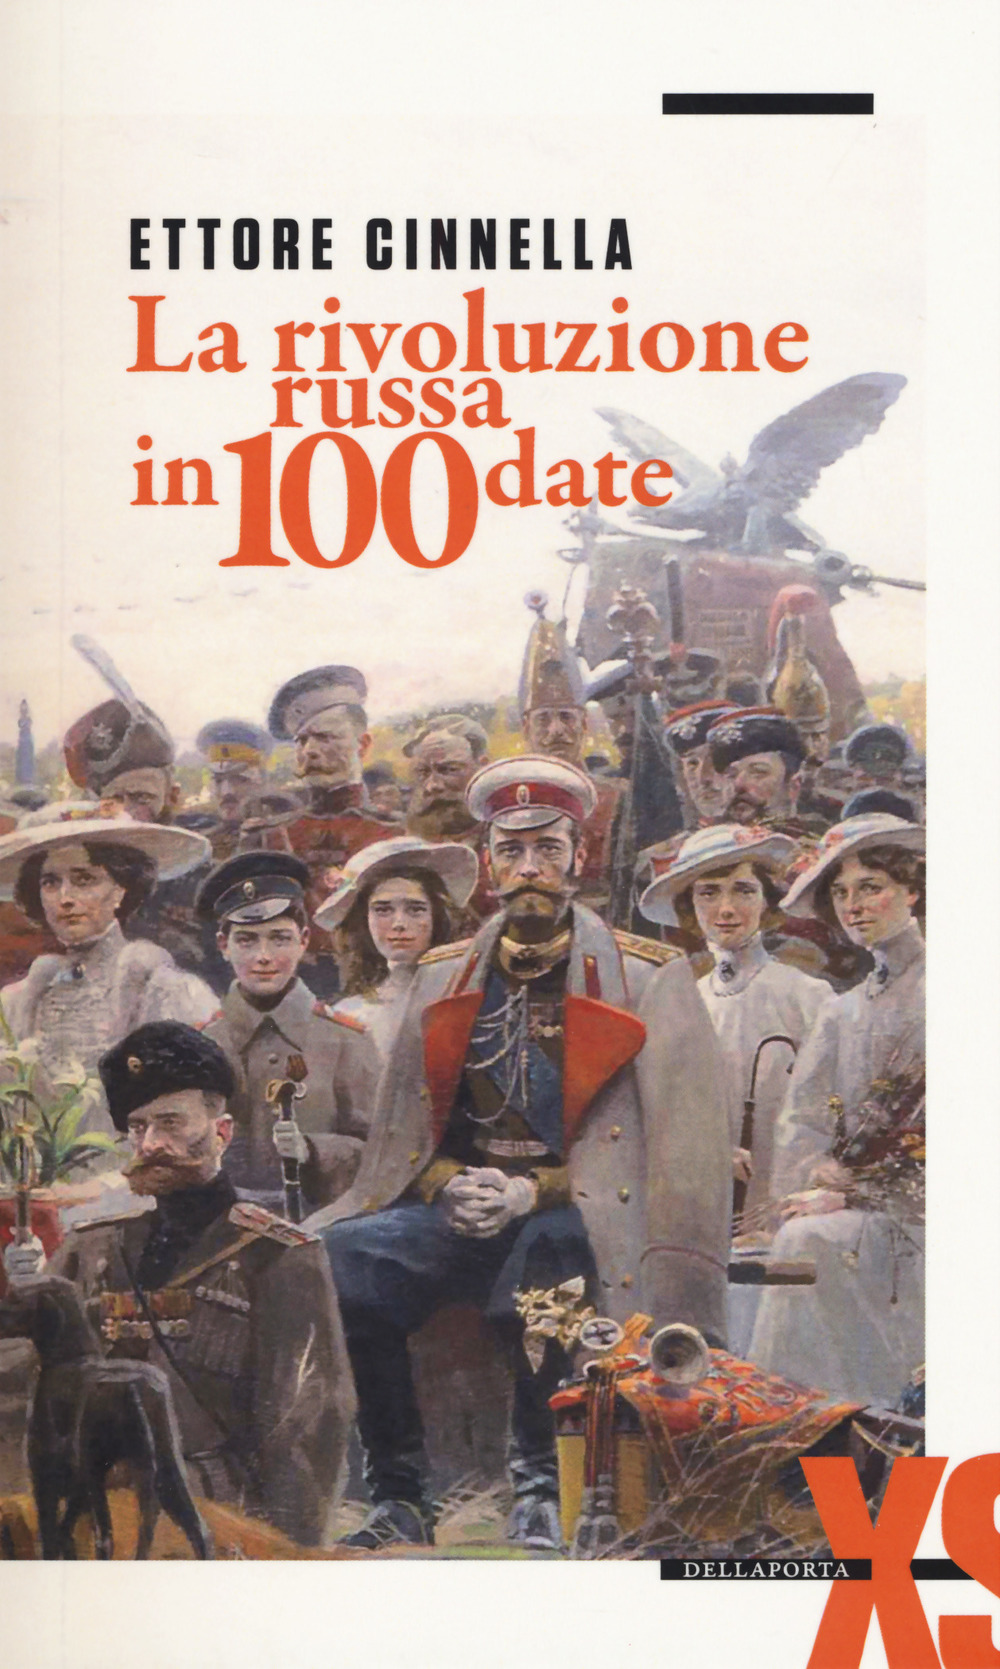 Couverture. Della Porta. La rivoluzione russa in 100 date. Ettore Cinnella. 2017-08-21